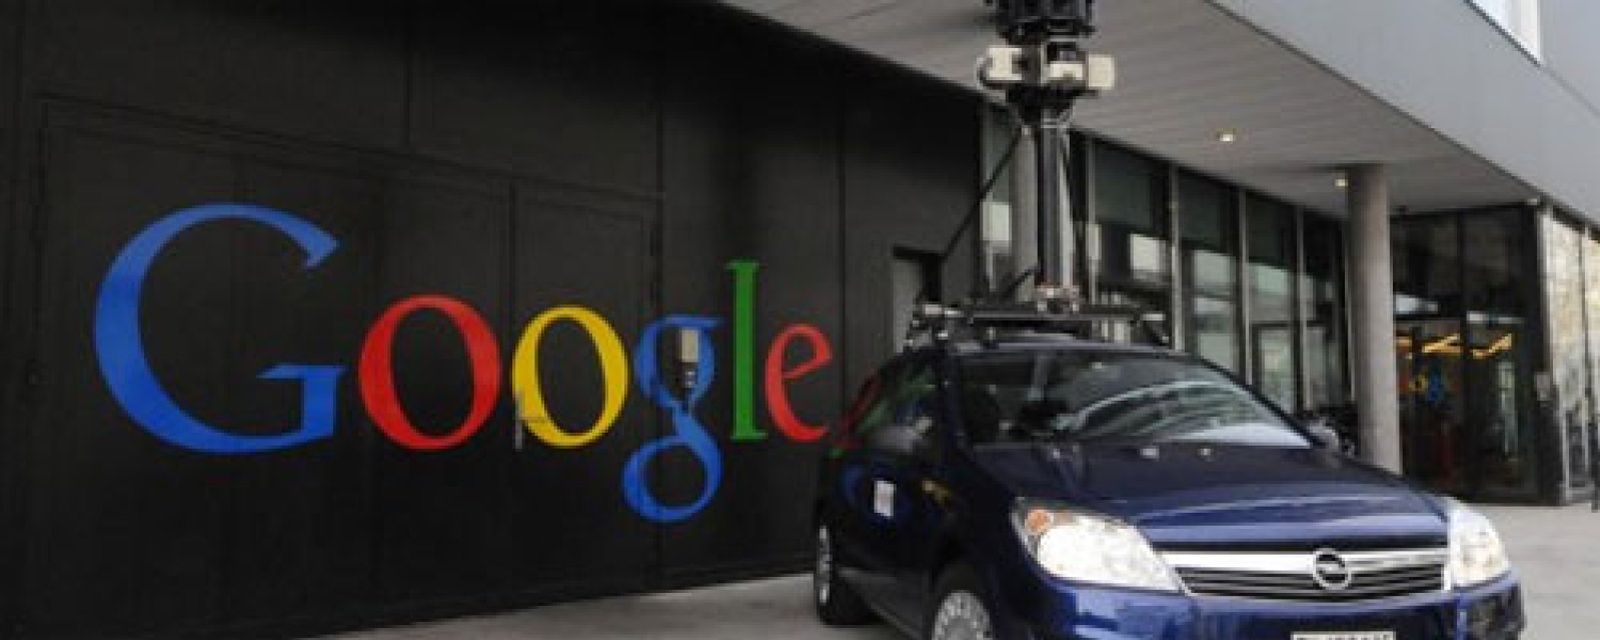 Foto: Google Street View, también en el interior de tiendas y restaurantes